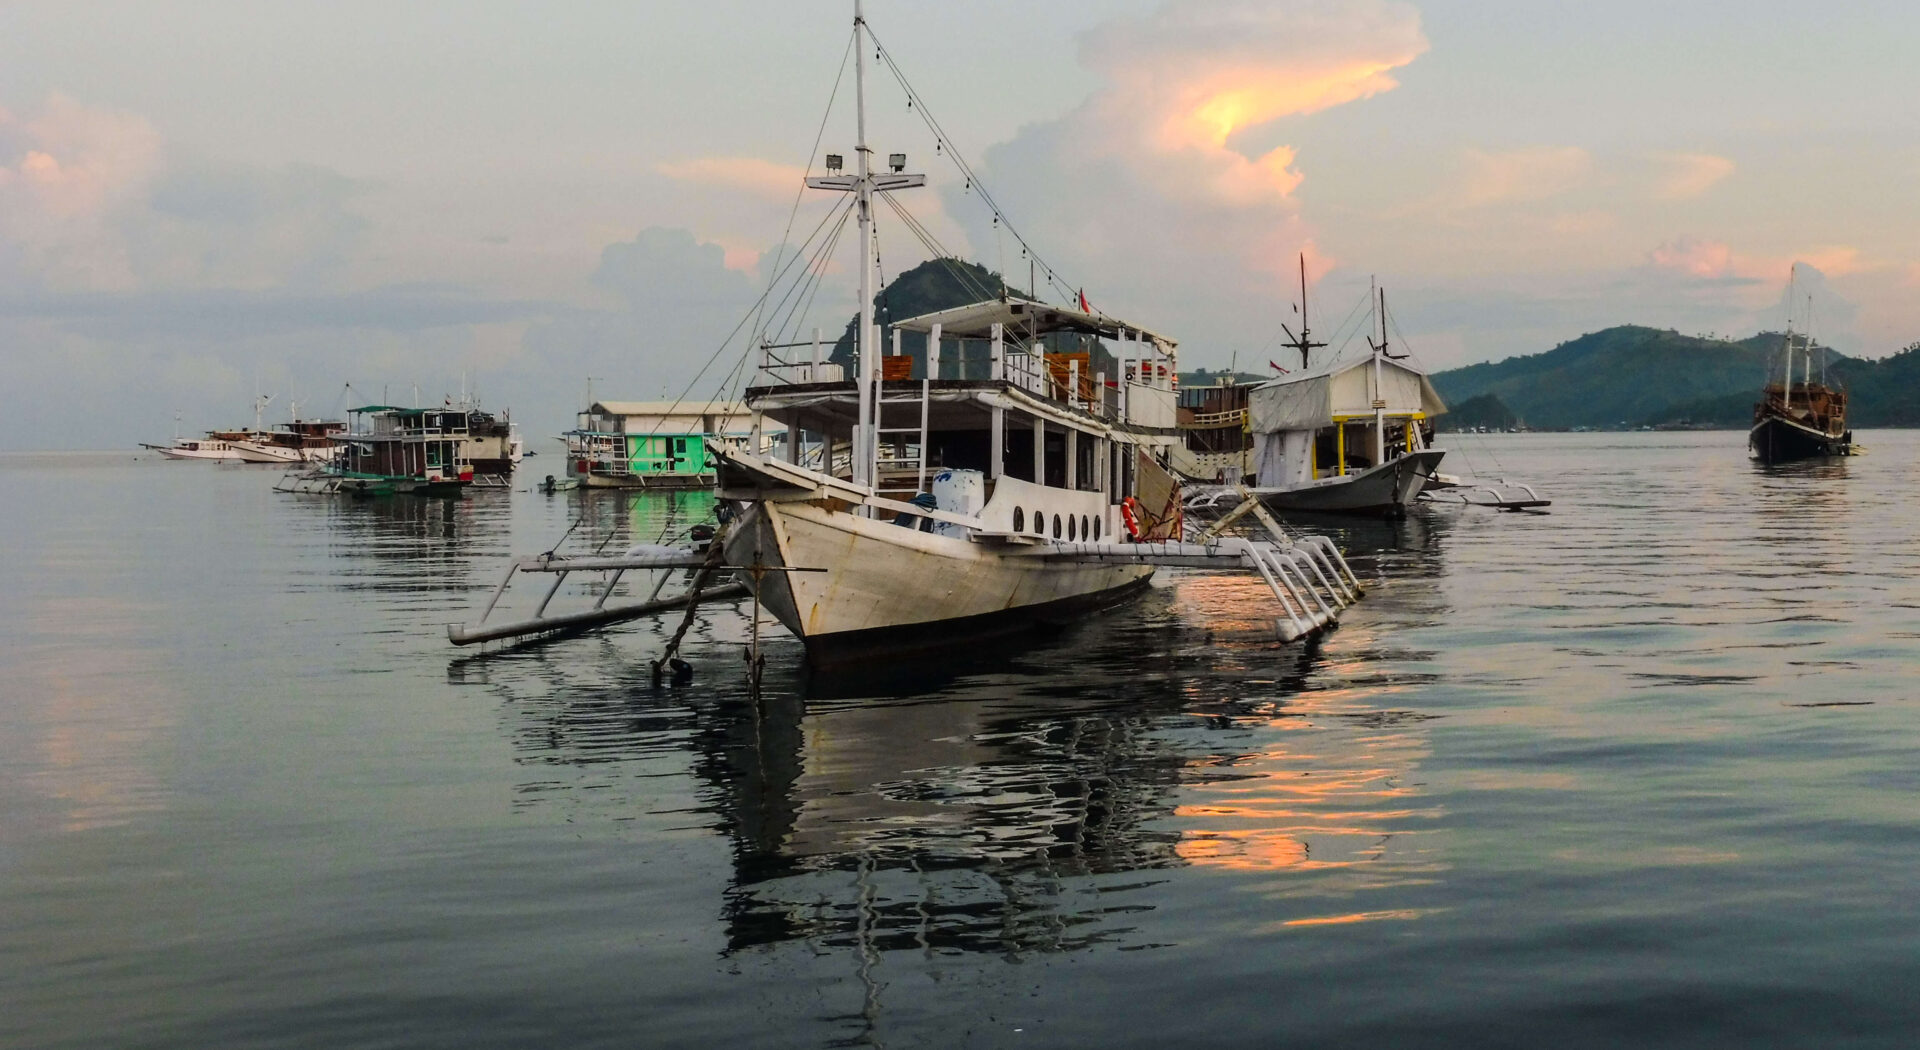 Det flytende nabolaget i Labuan Bajo huser alt fra skrallende, totaksdrevne “racer“-båter og tradisjonelle treskuter, til spiderboats – som vi ser her.